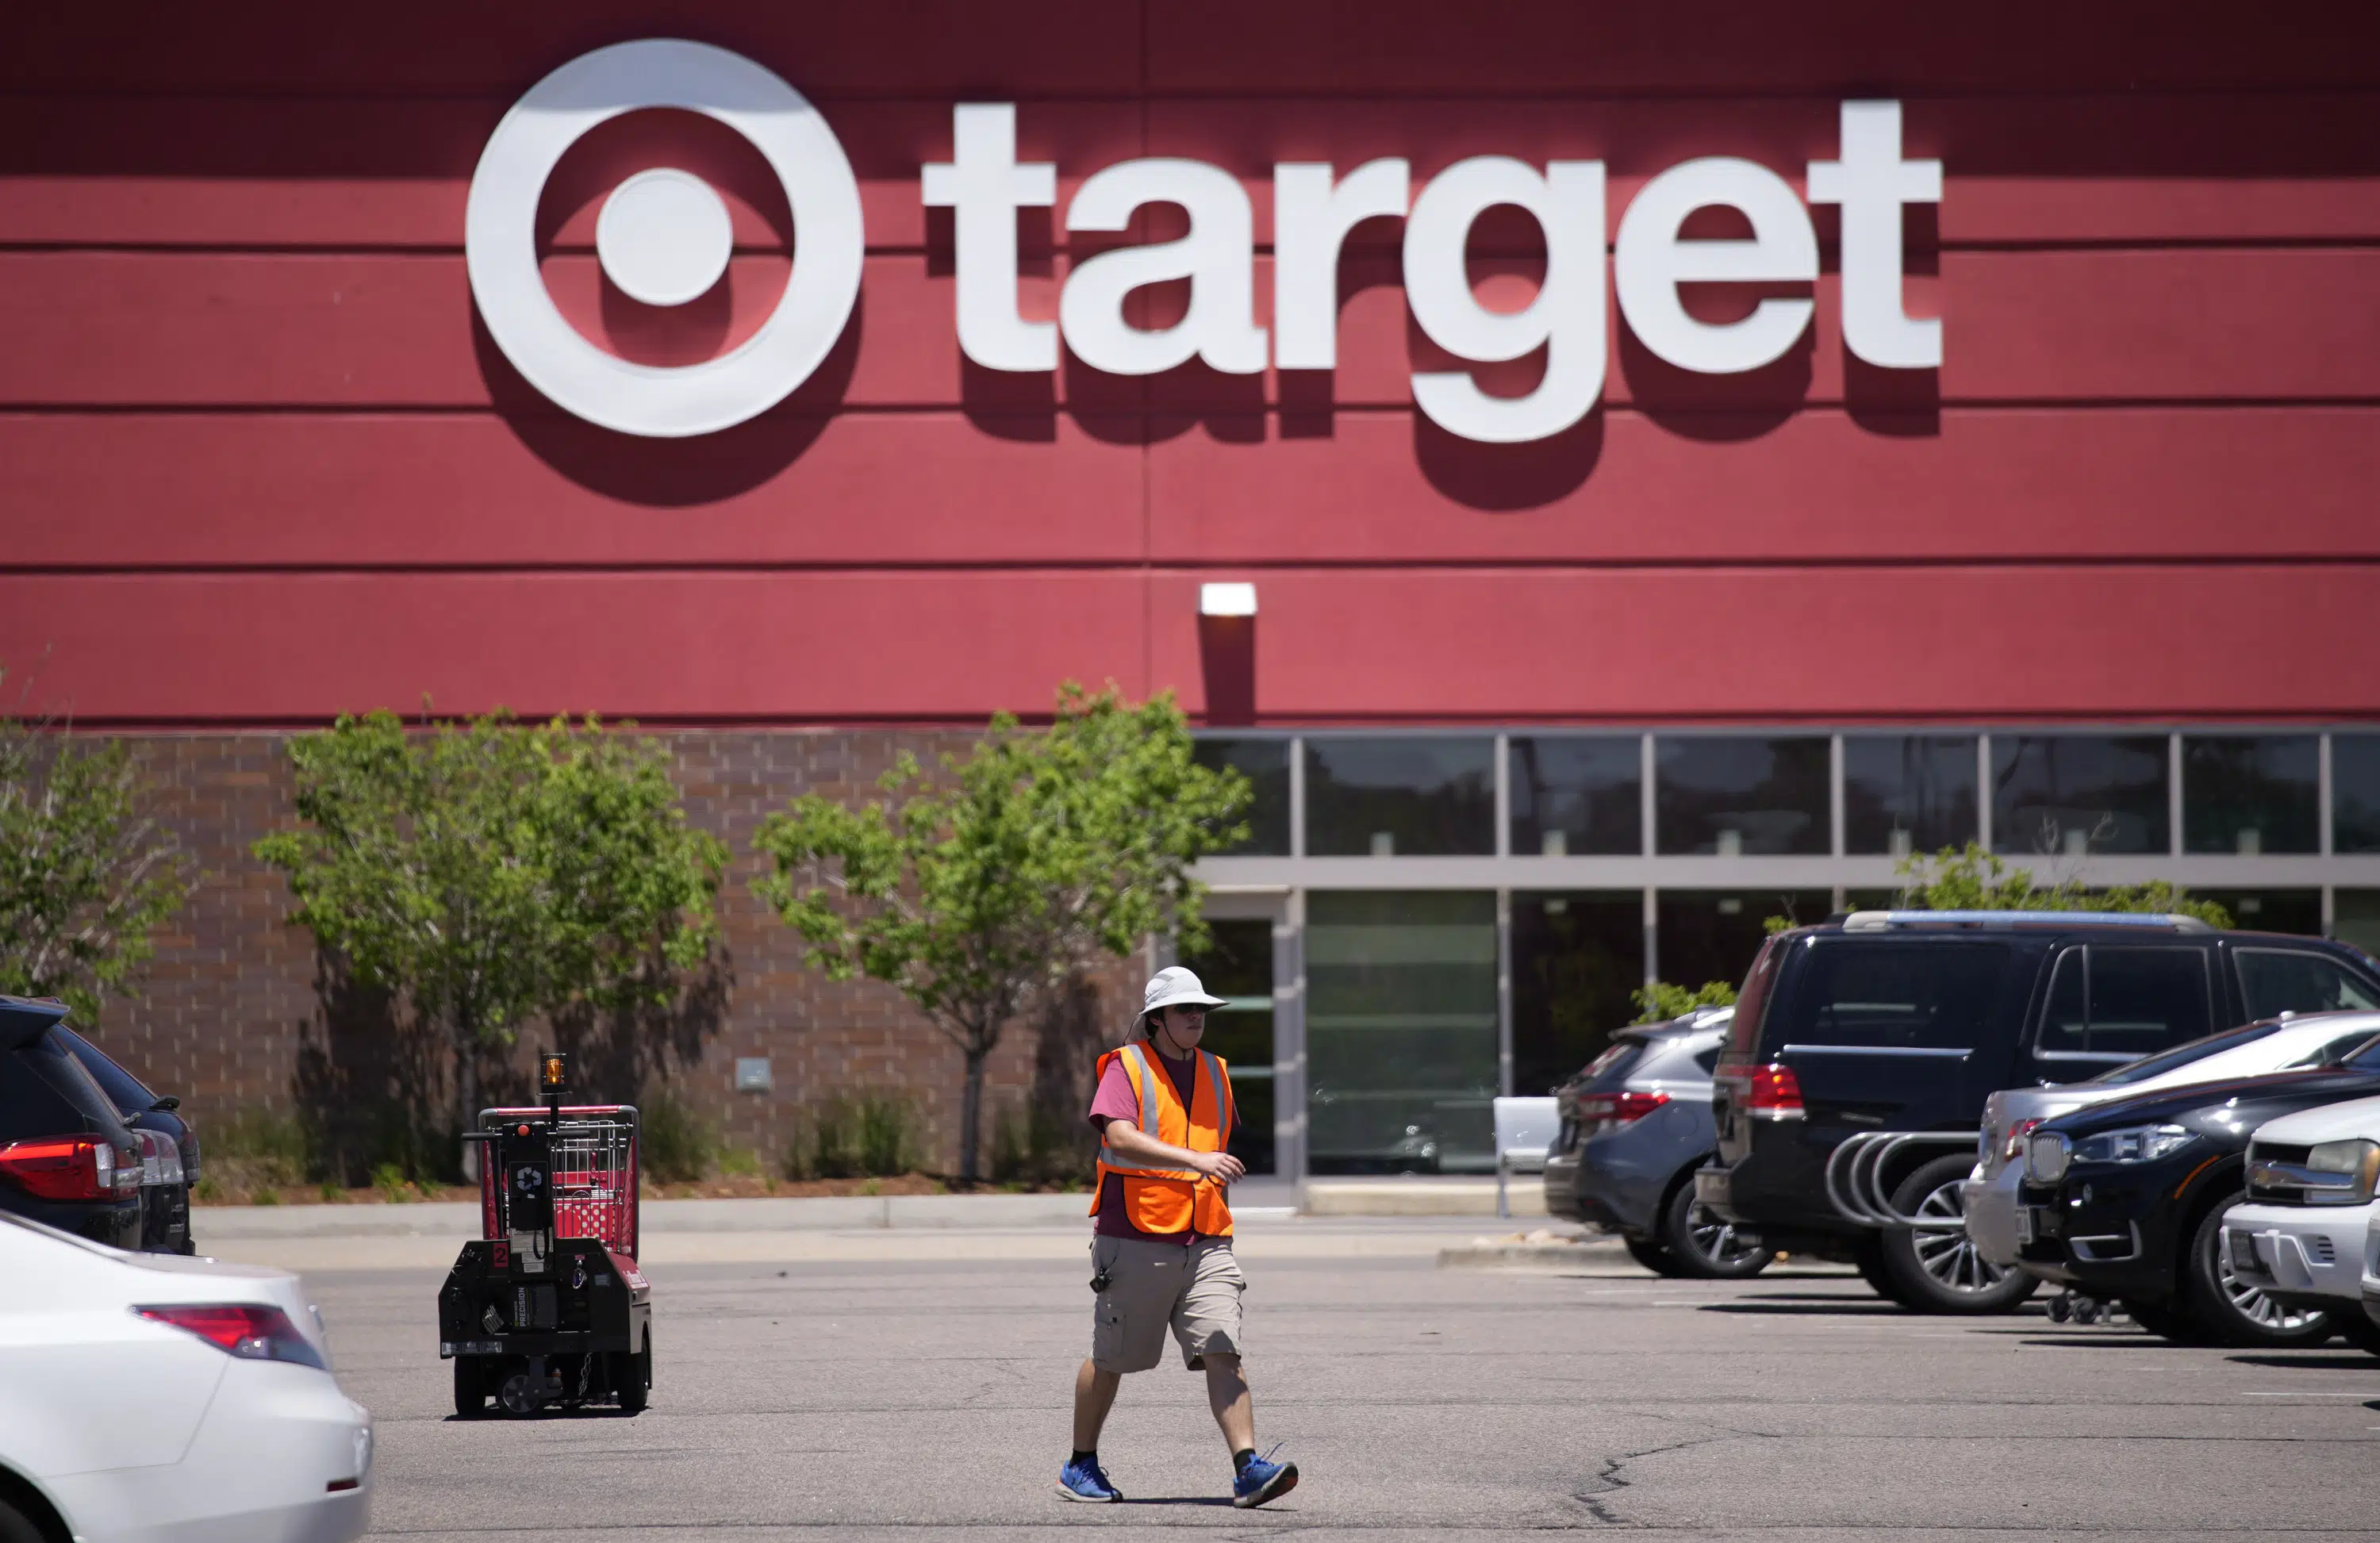 A Target está removendo algumas mercadorias LGBTQ das lojas antes do orgulho de junho, após ameaças aos trabalhadores